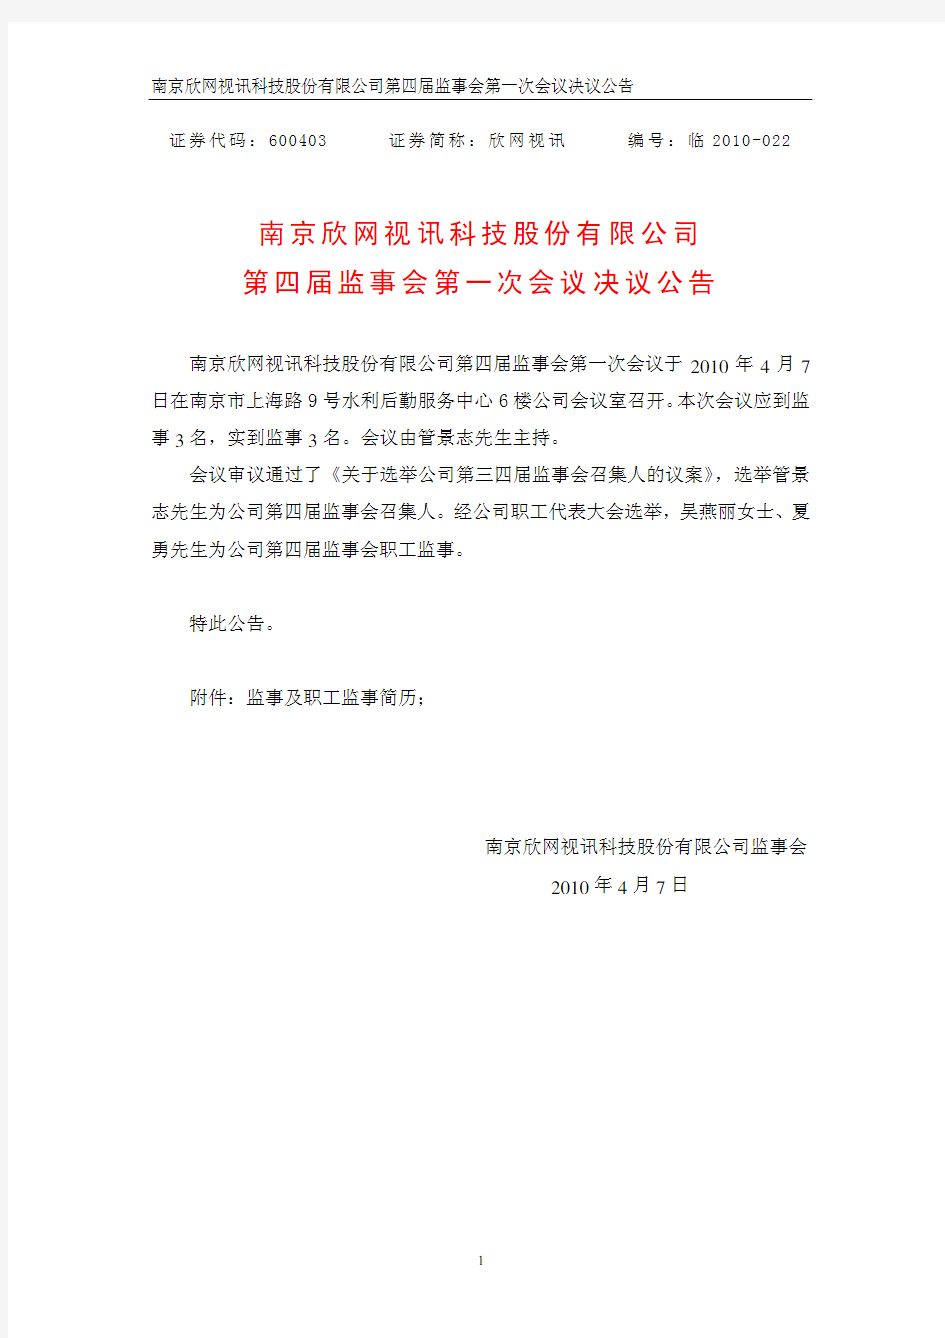 南京欣网视讯科技股份有限公司第四届监事会第一次会议决议公告